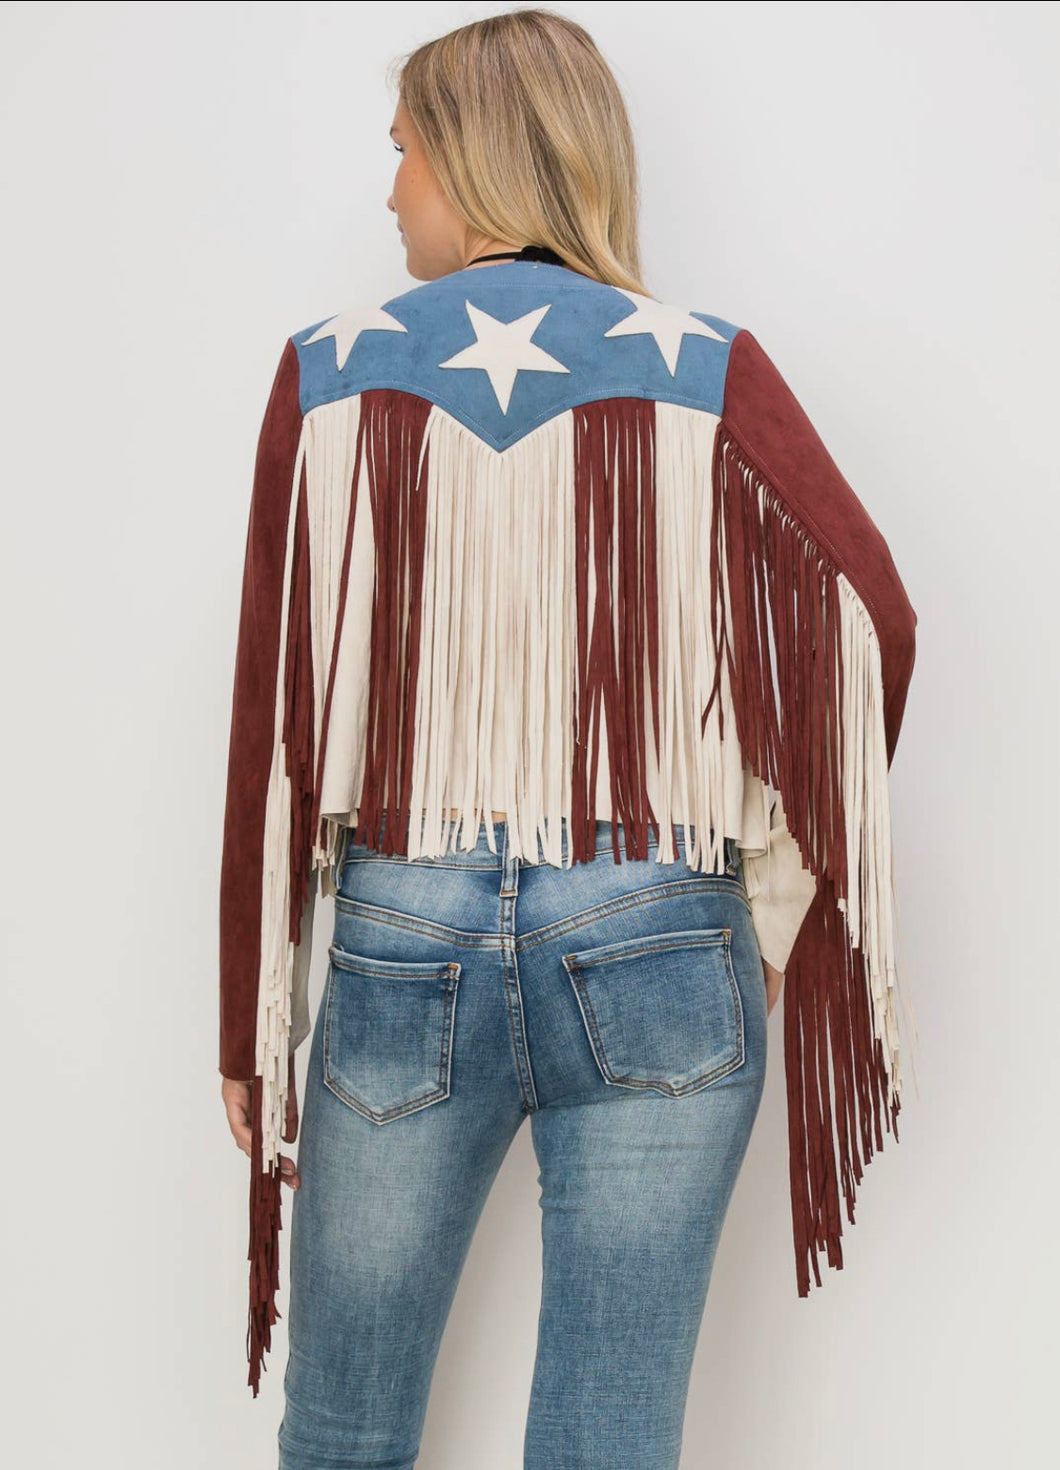 Fringe “Americana” Jacket